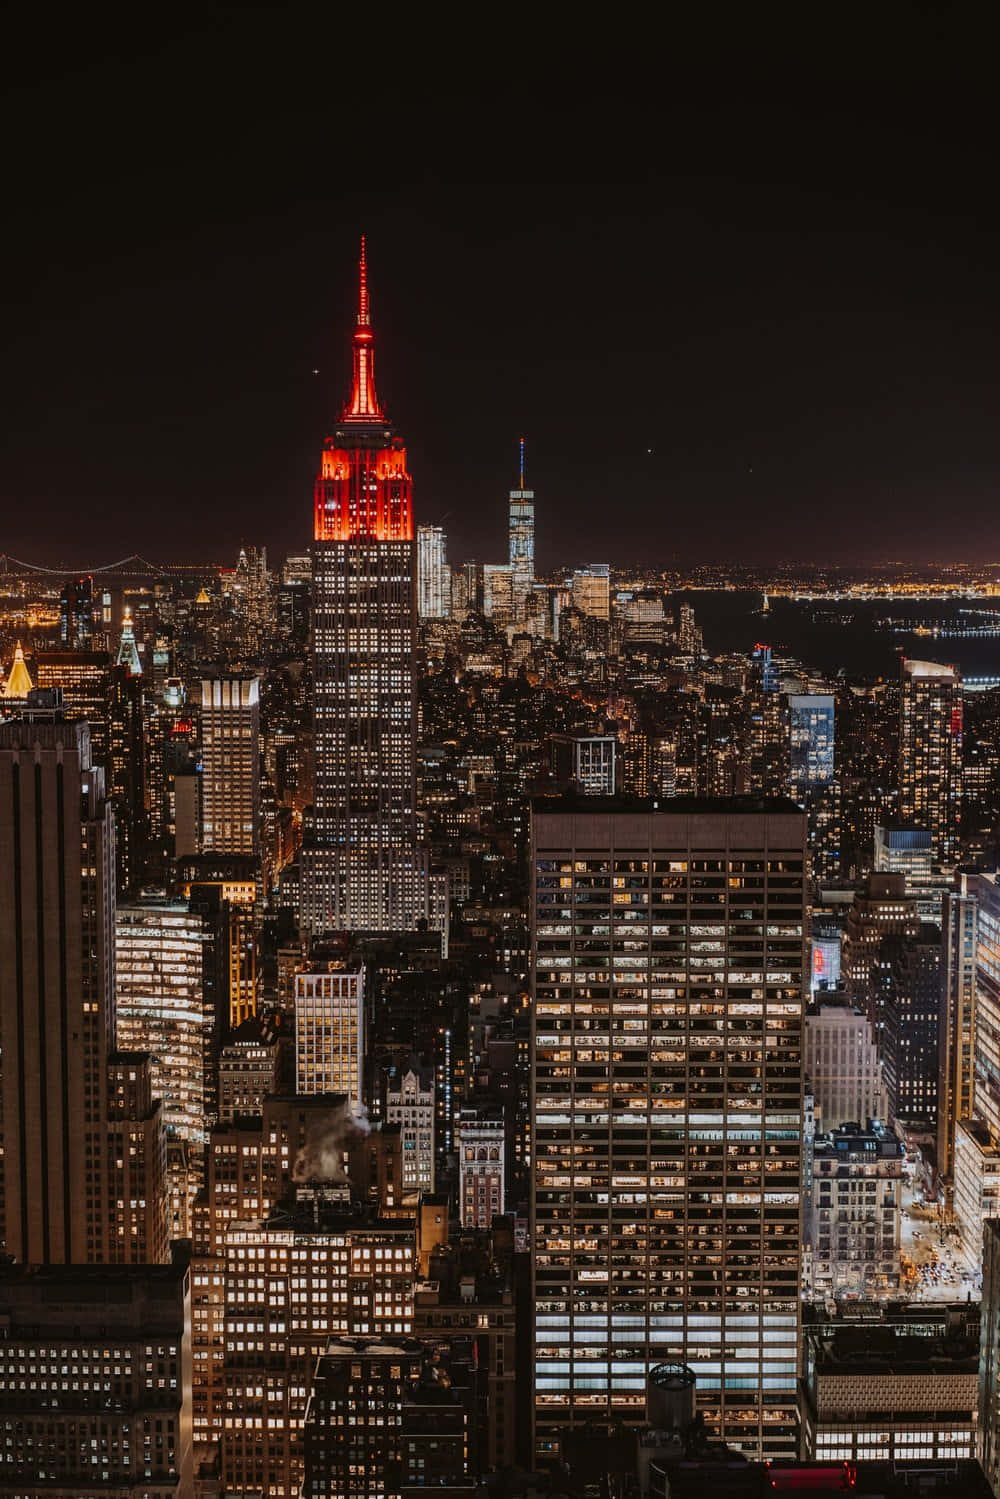 Imagendel Empire State Building Rojo En La Ciudad De Nueva York De Noche.